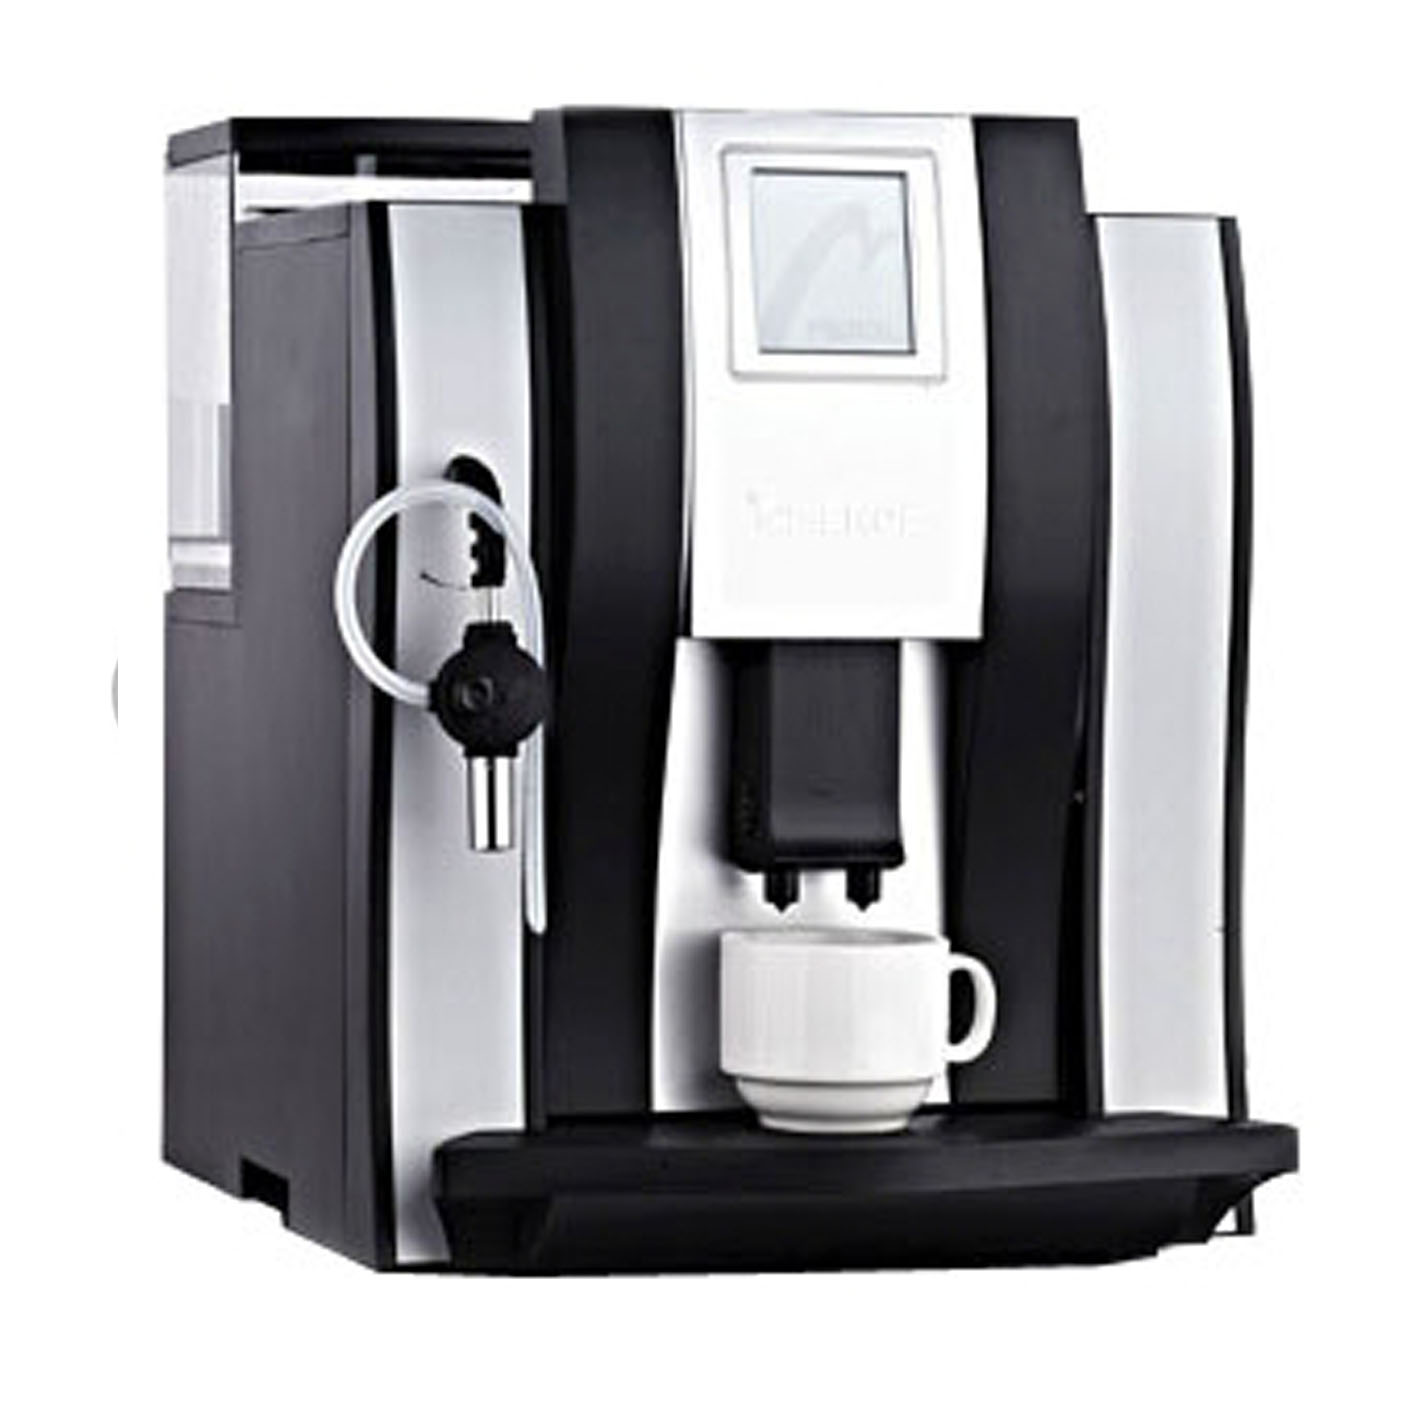 Автоматическая кофемашина Italco Merol 710, черная